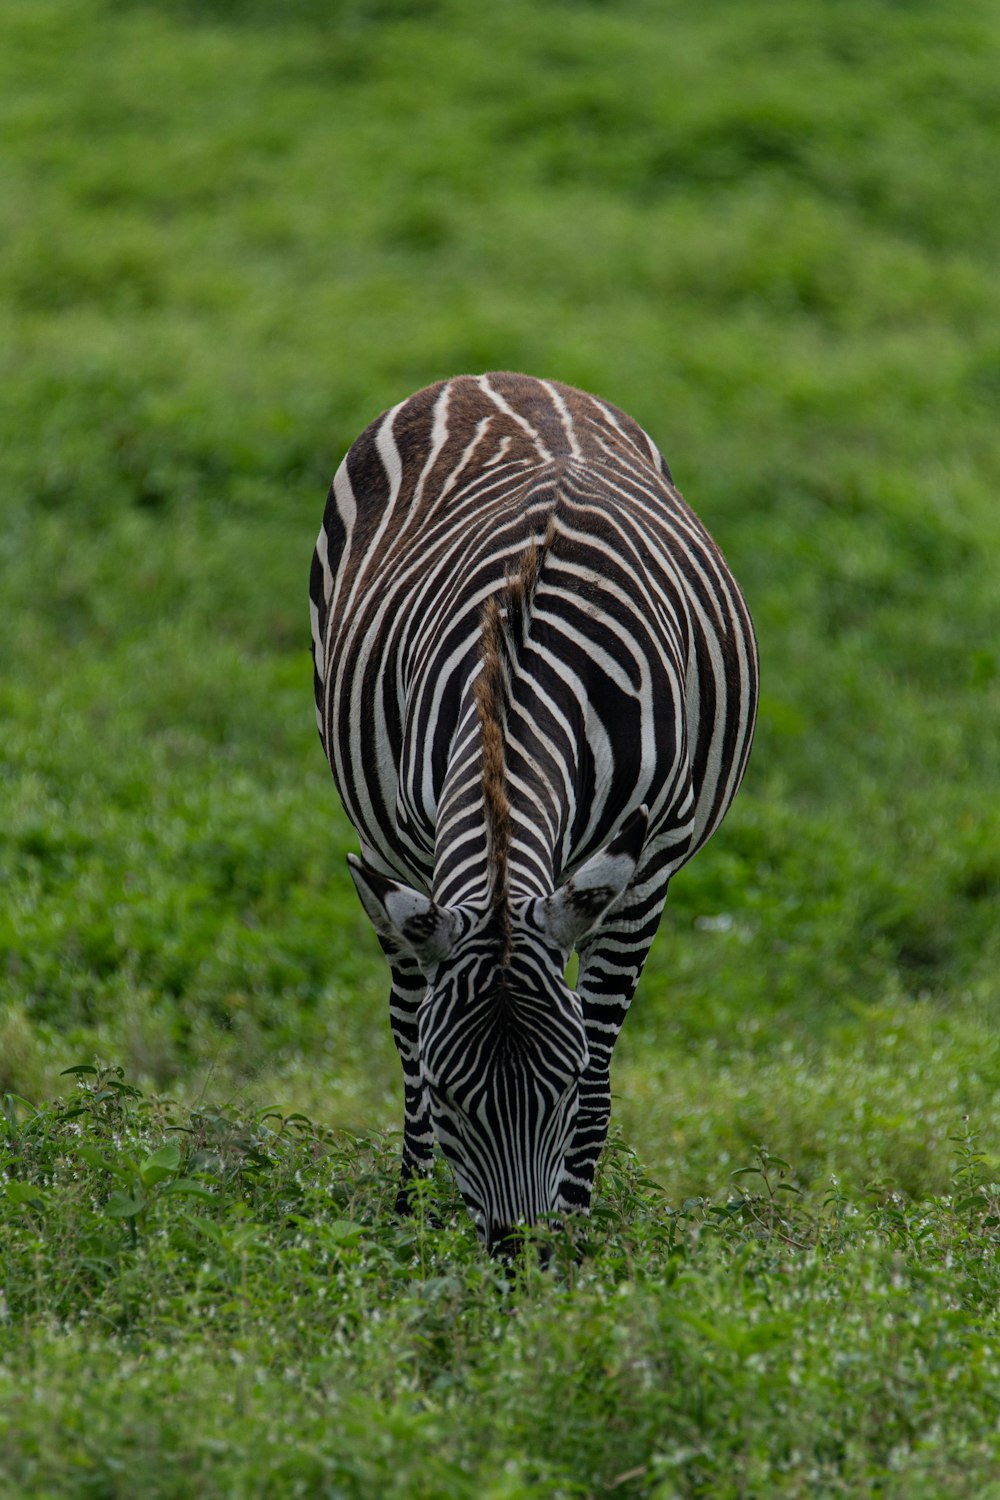 a zebra grazing in a field of green grass